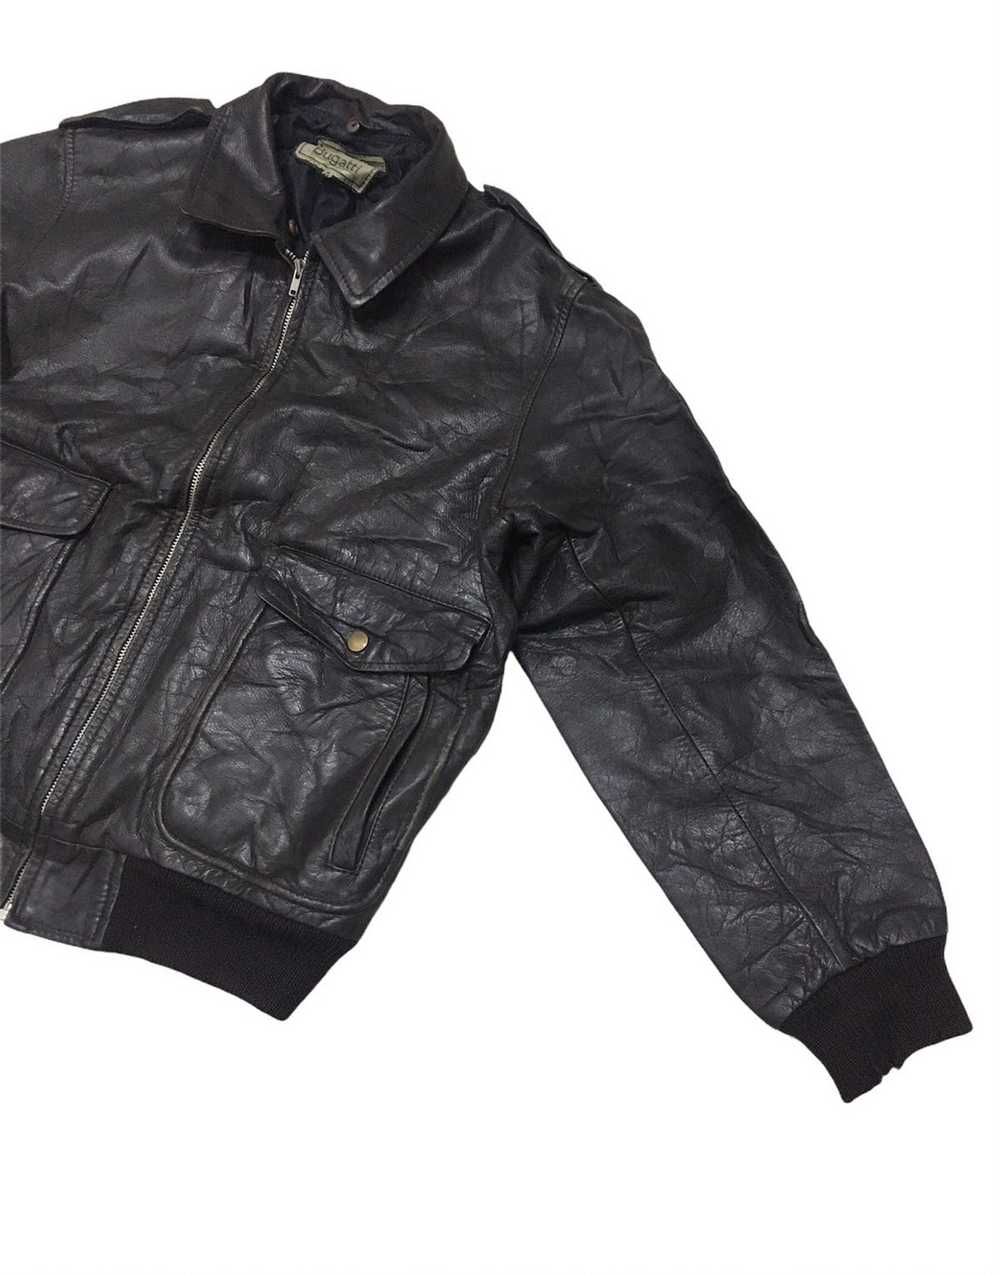 Bugatti × Leather × Leather Jacket Vintage Bugatt… - image 3